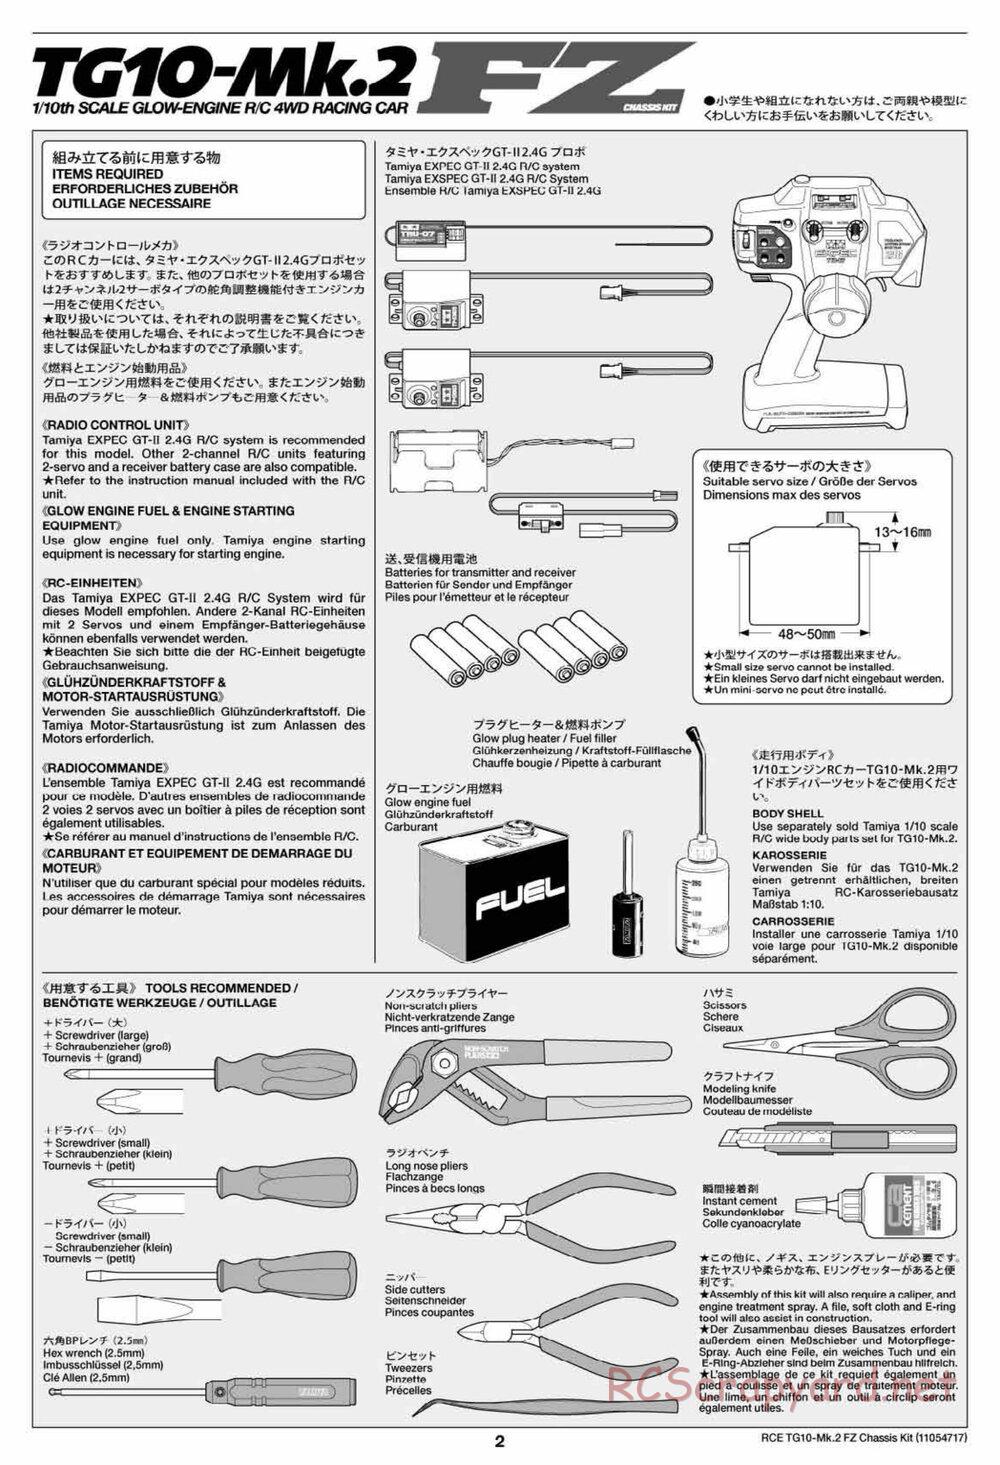 Tamiya - TG10 Mk.2 FZ Chassis - Manual - Page 2